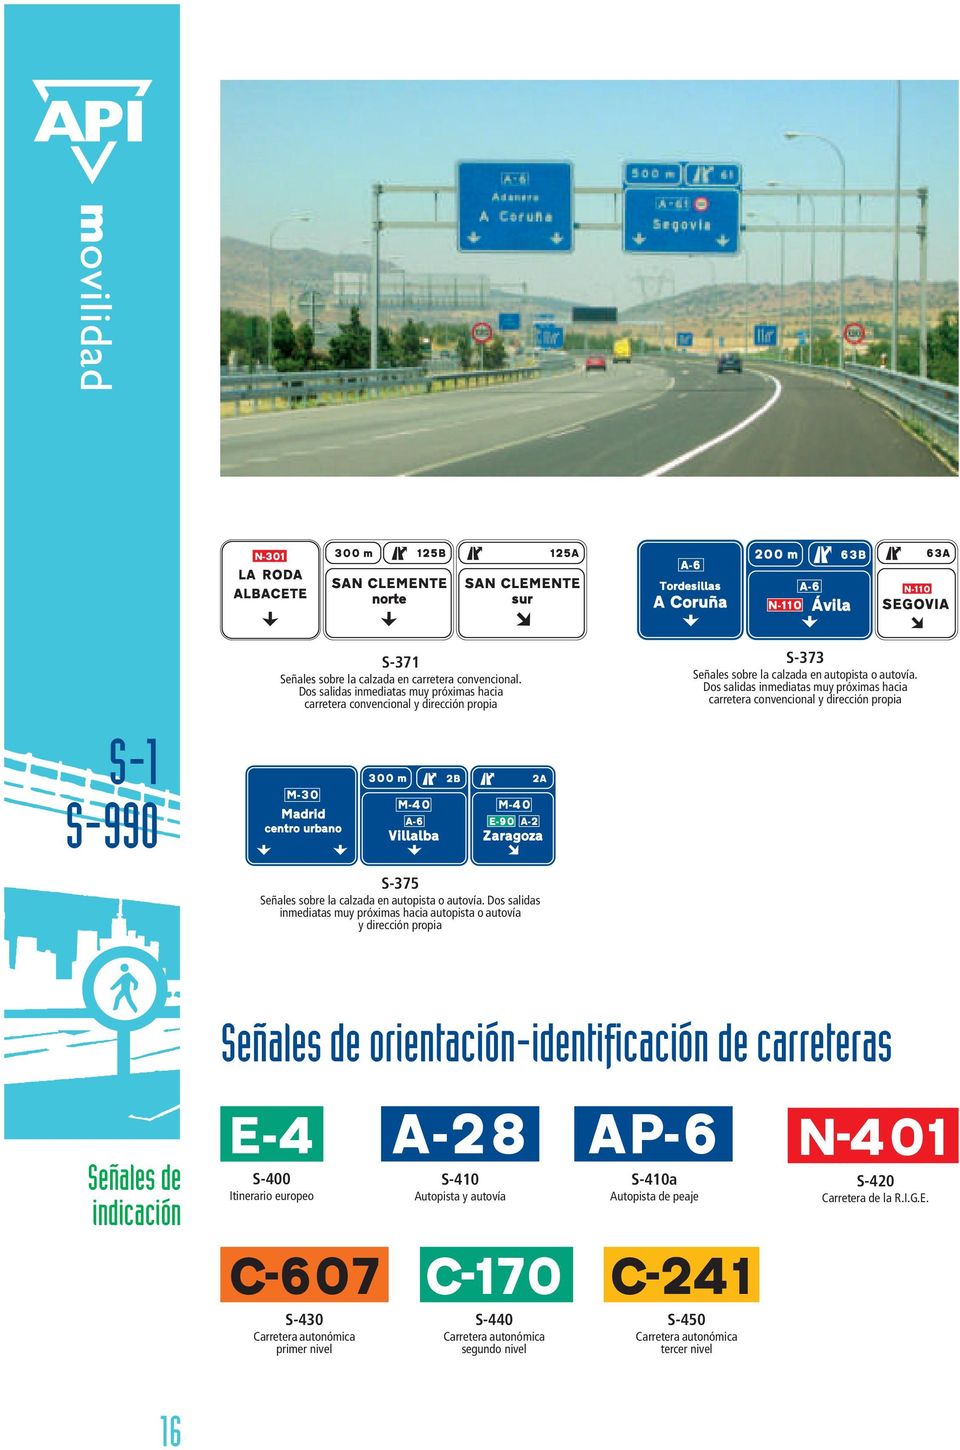 Dos salidas inmediatas muy próximas hacia autopista o autovía y dirección propia S-373 Señales sobre la calzada en autopista o autovía.